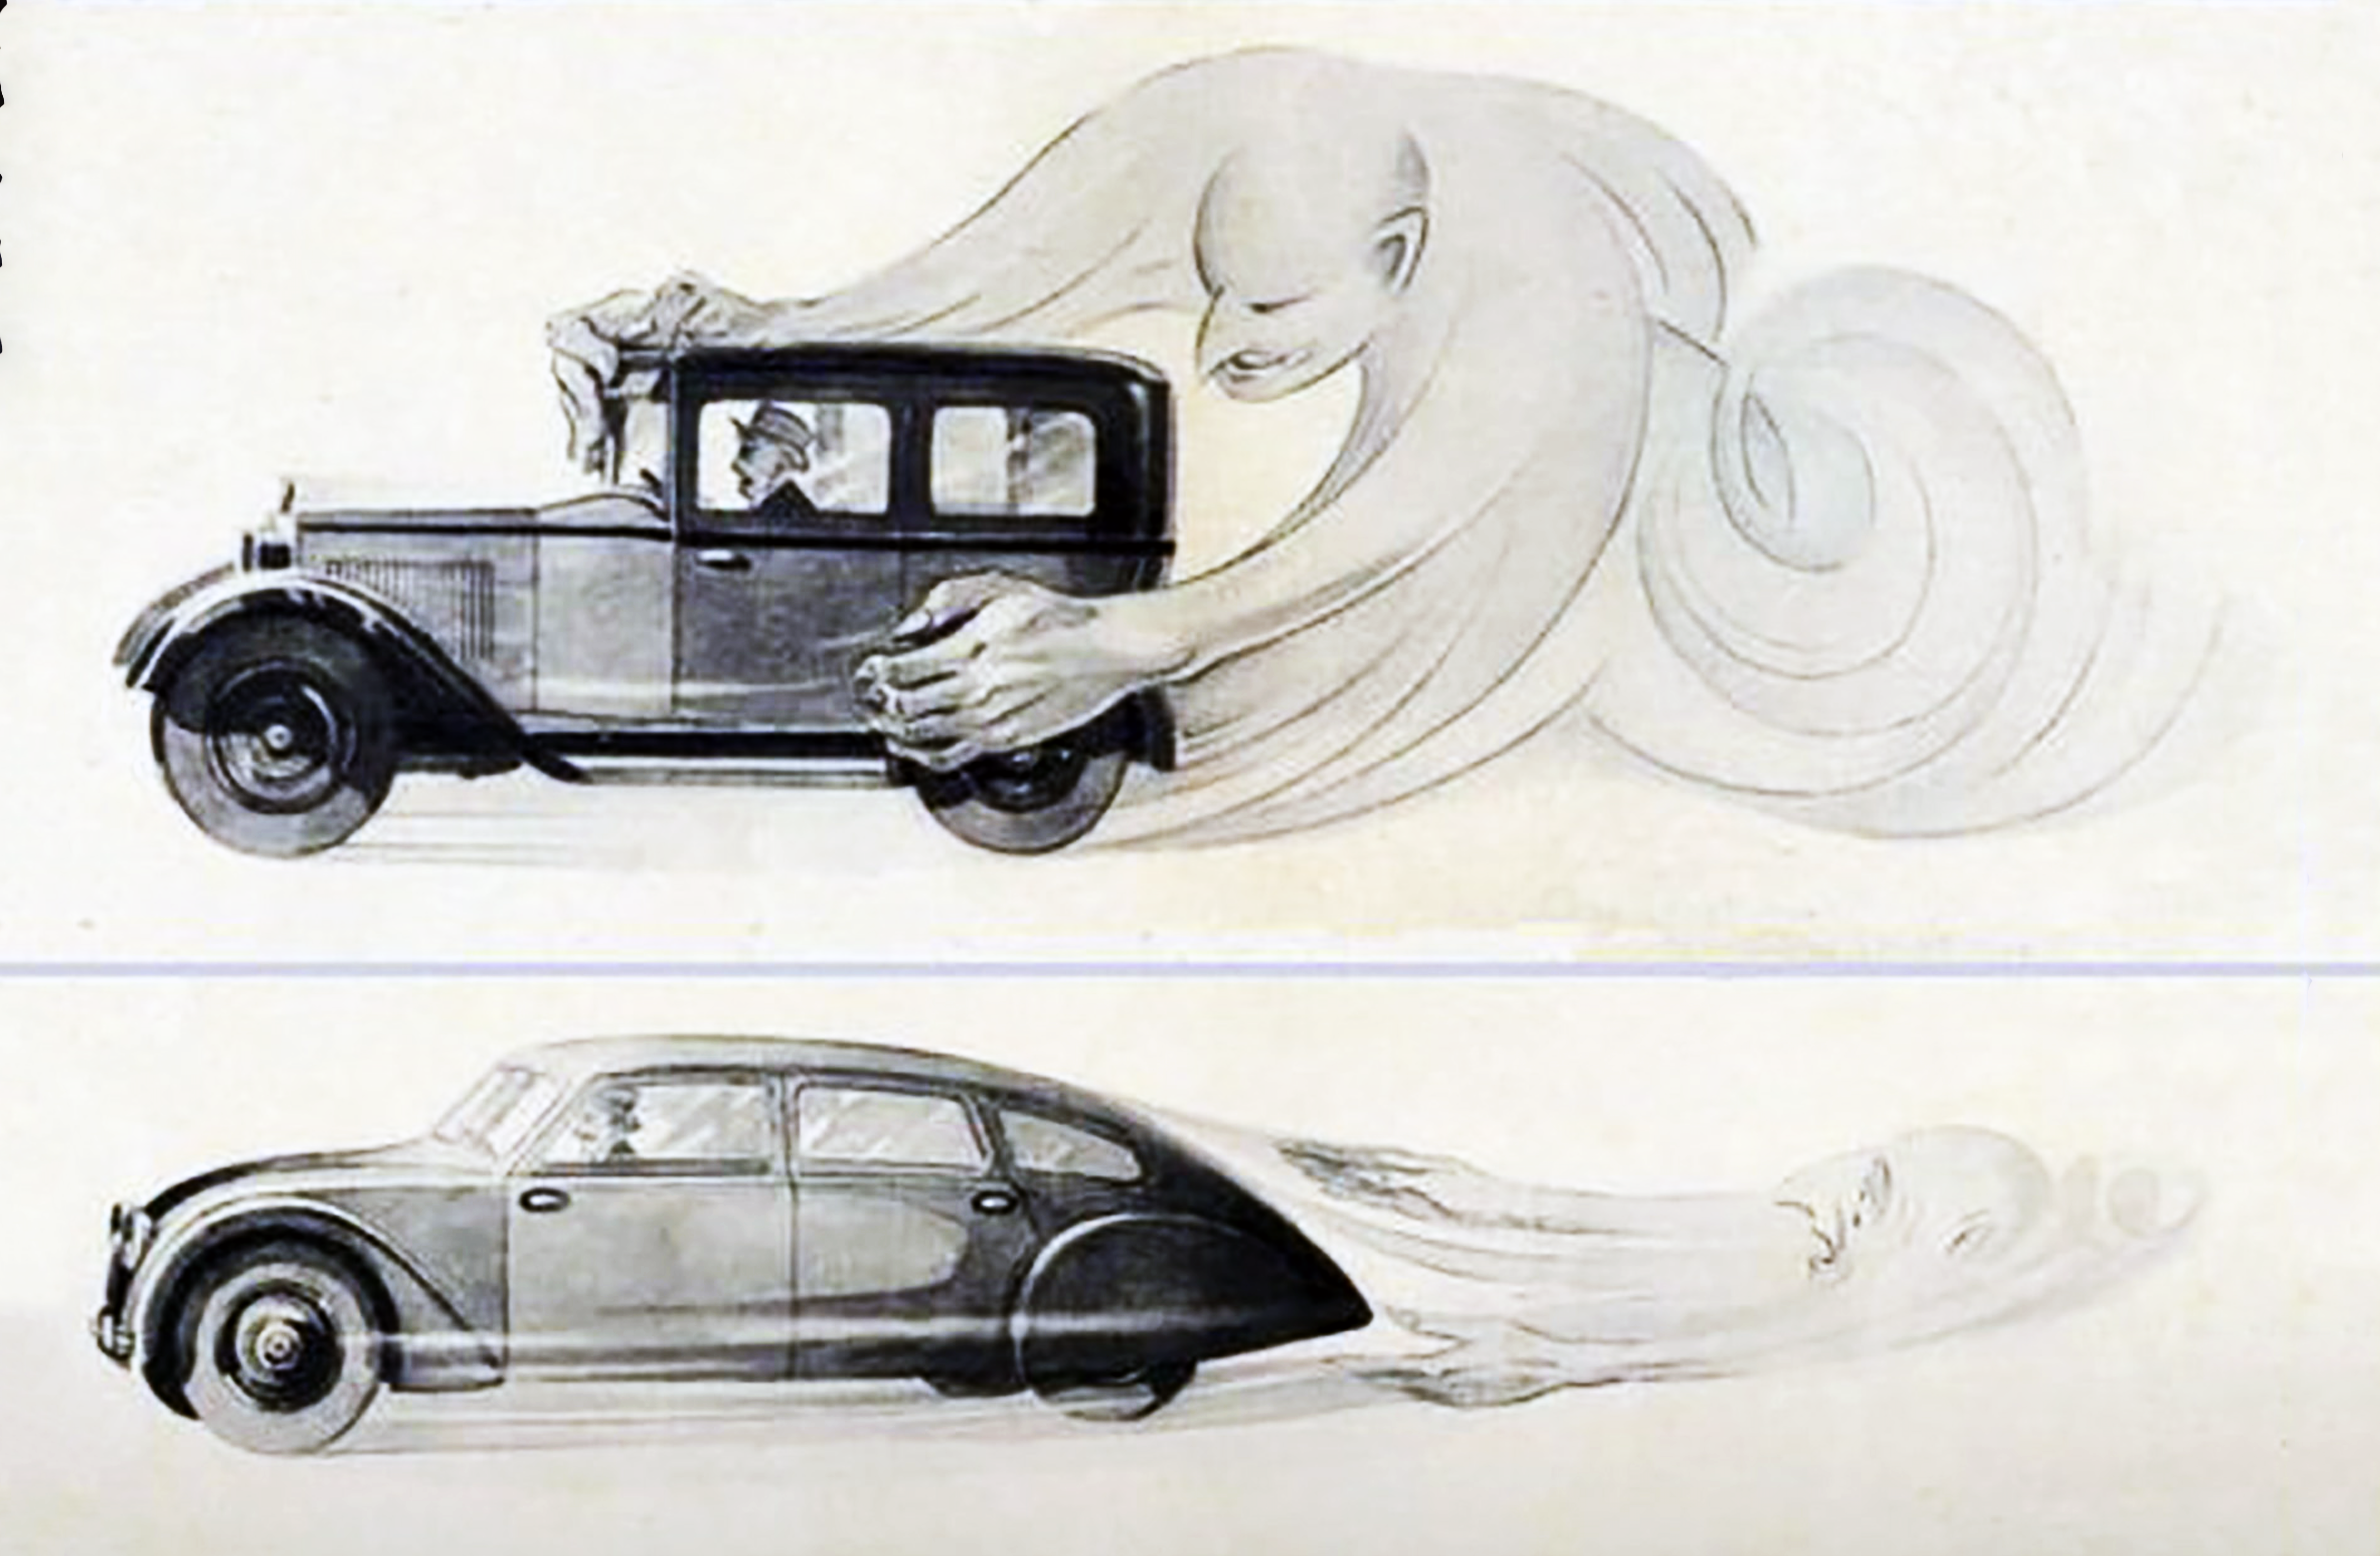 Advertentie uit de jaren 30 over aerodynamica